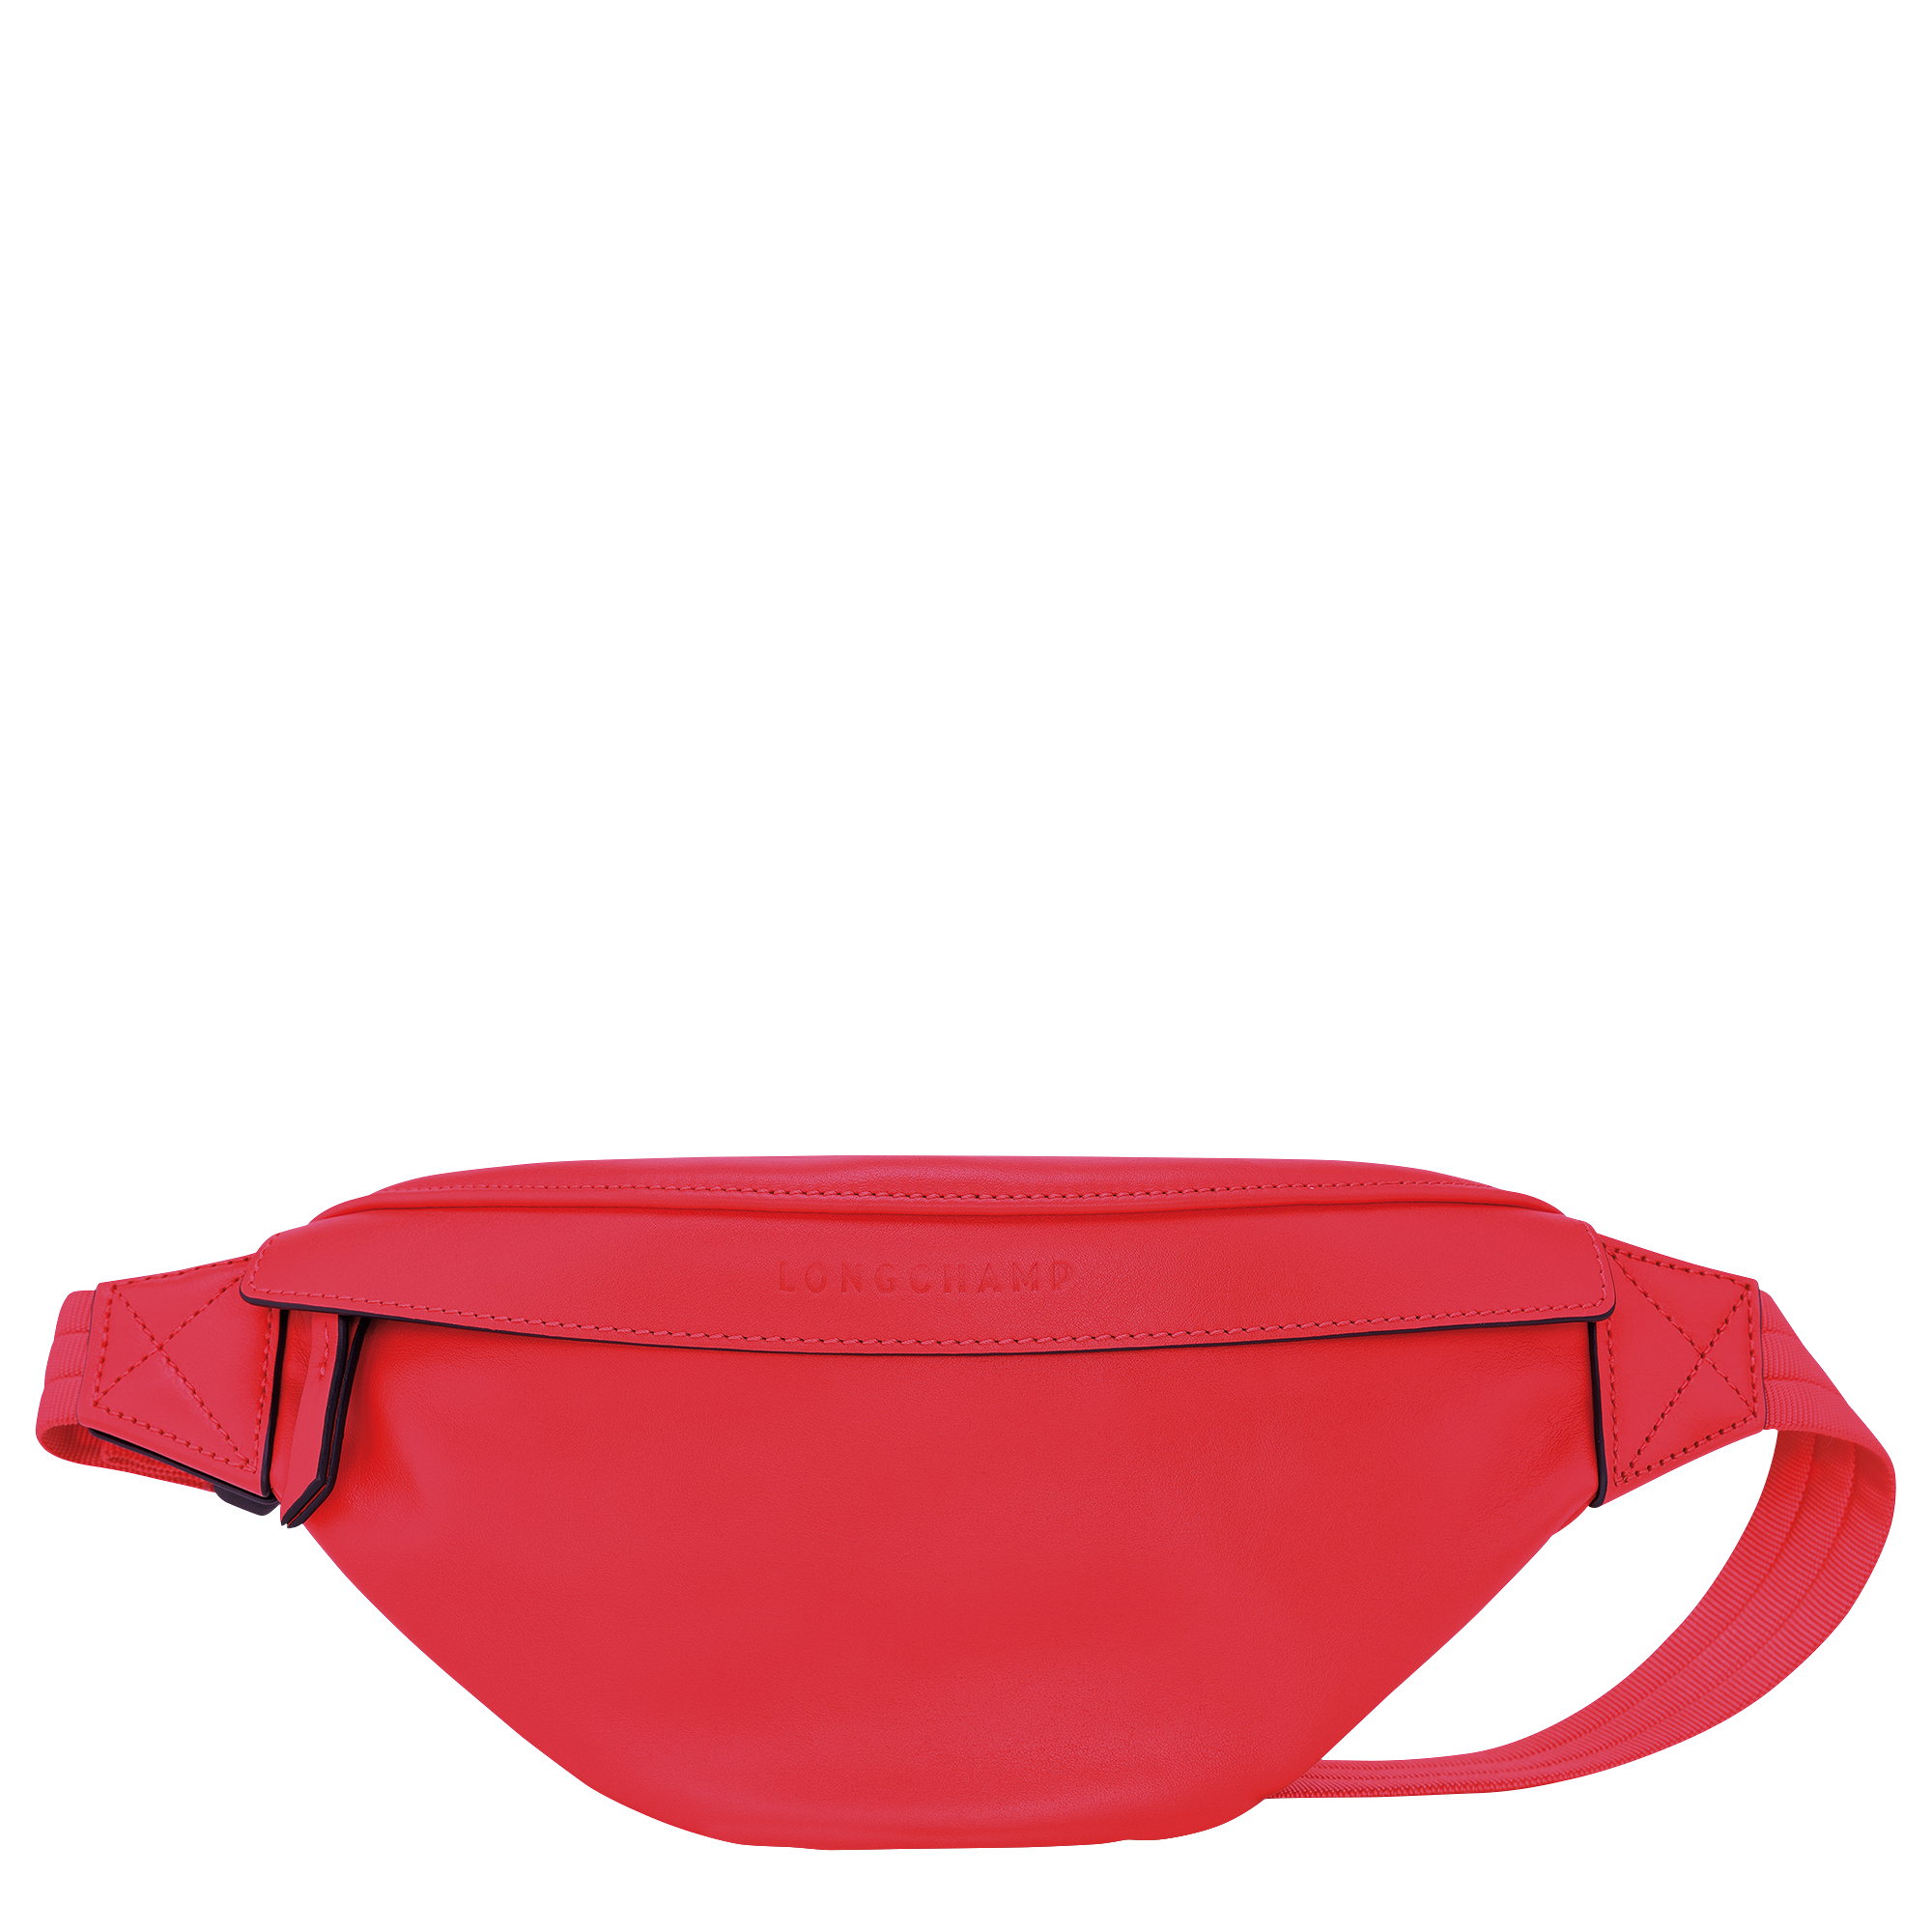 belt bag red